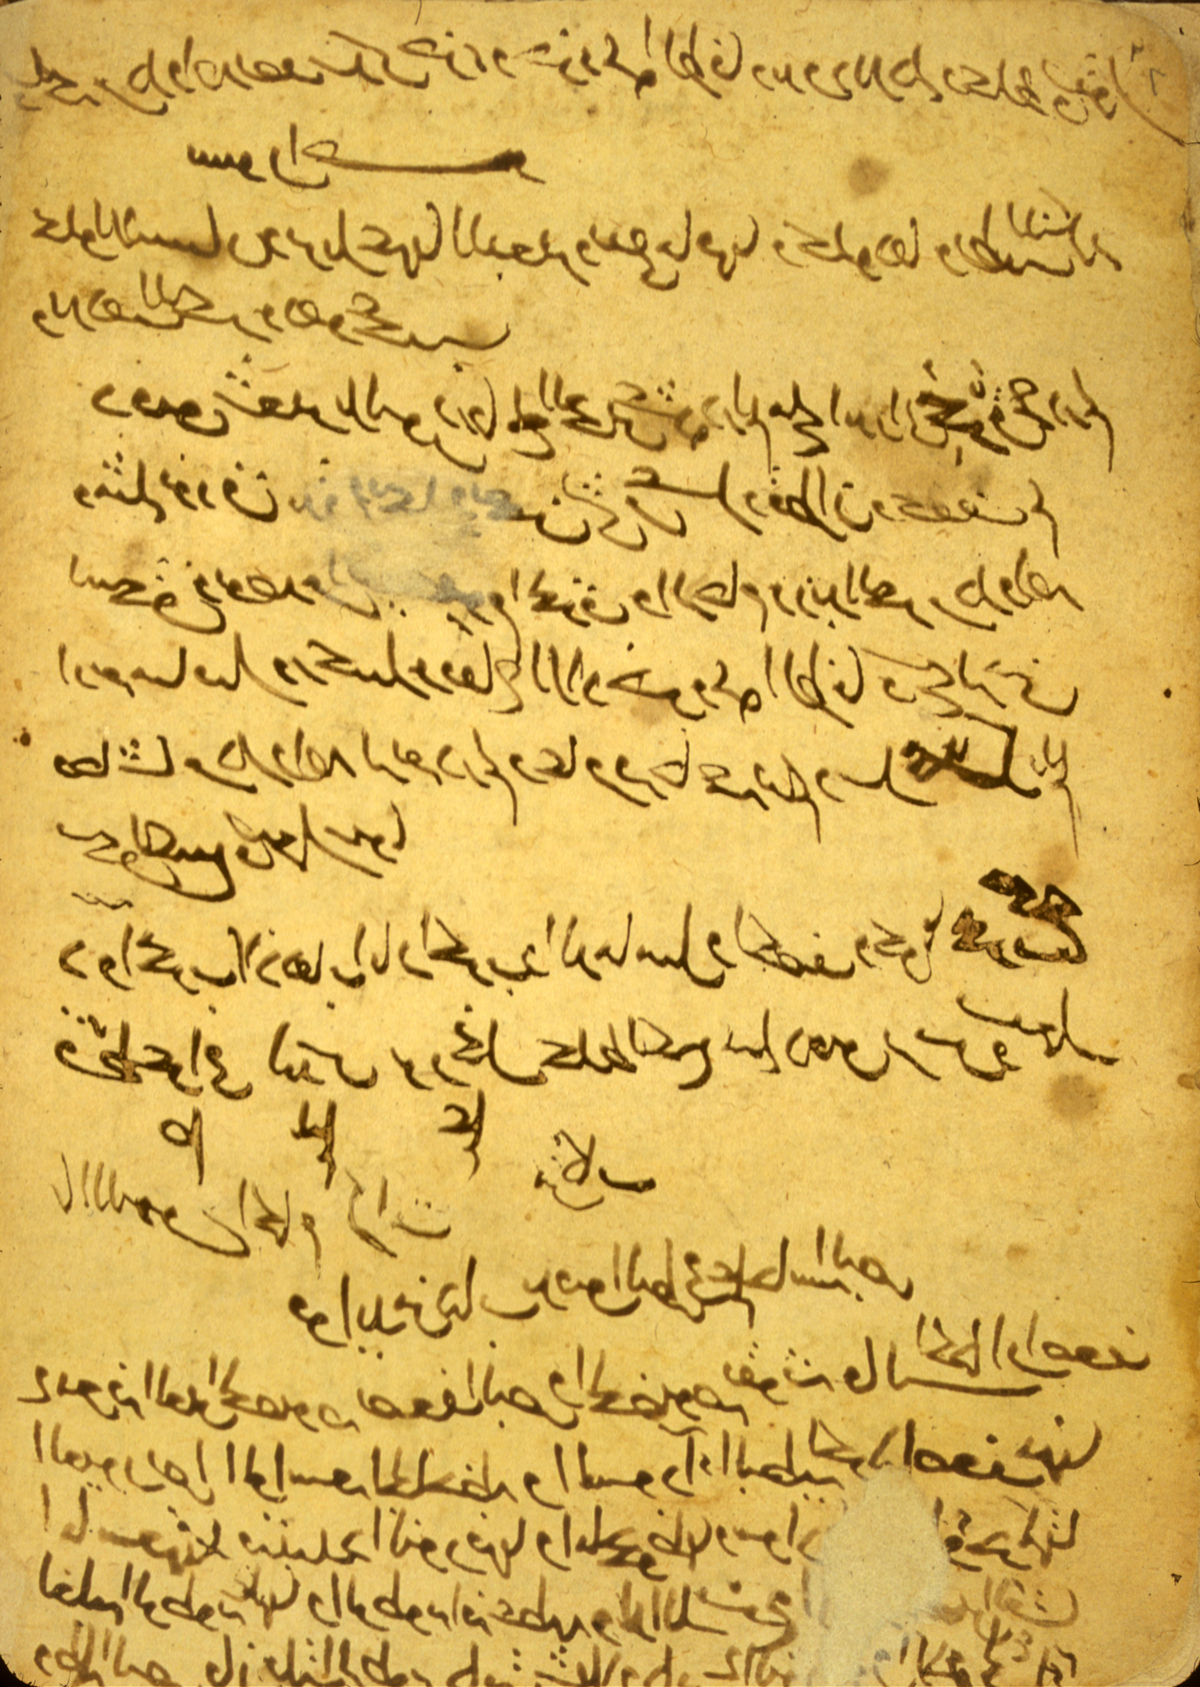 Libro de oftalmología atribuido a Ibn Wafid. Fuente: Islamic Medical Manuscripts at the National Library of Medicine. En: https://www.nlm.nih.gov/hmd/arabic/mon_gallery.html